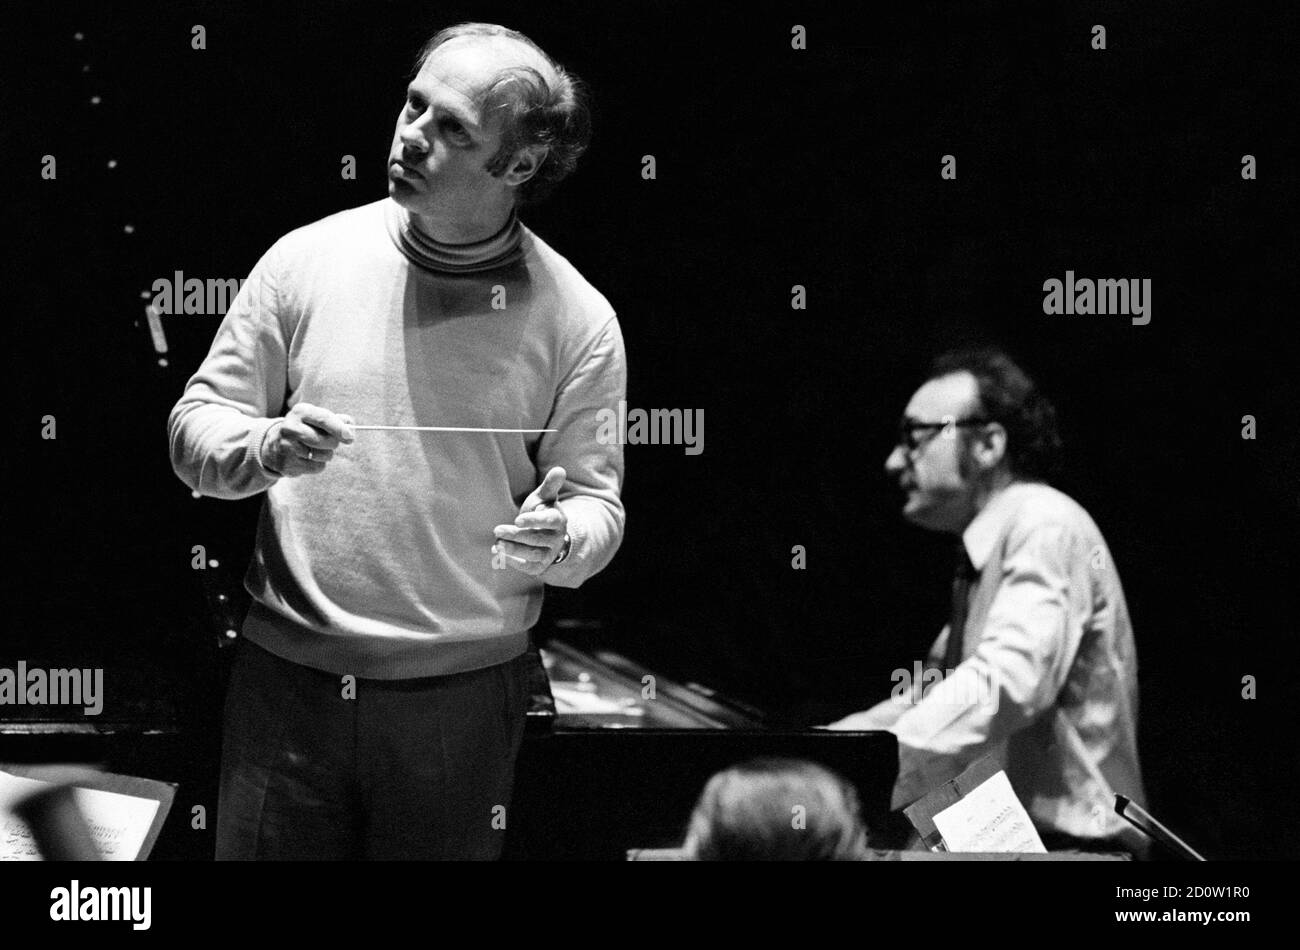 Bernard Haitink et Alfred Brendel répètent un concerto pour piano Liszt avec le London Philharmonic Orchestra (OPL) dans le Royal Festival Hall, Londres, mai 1972 Banque D'Images